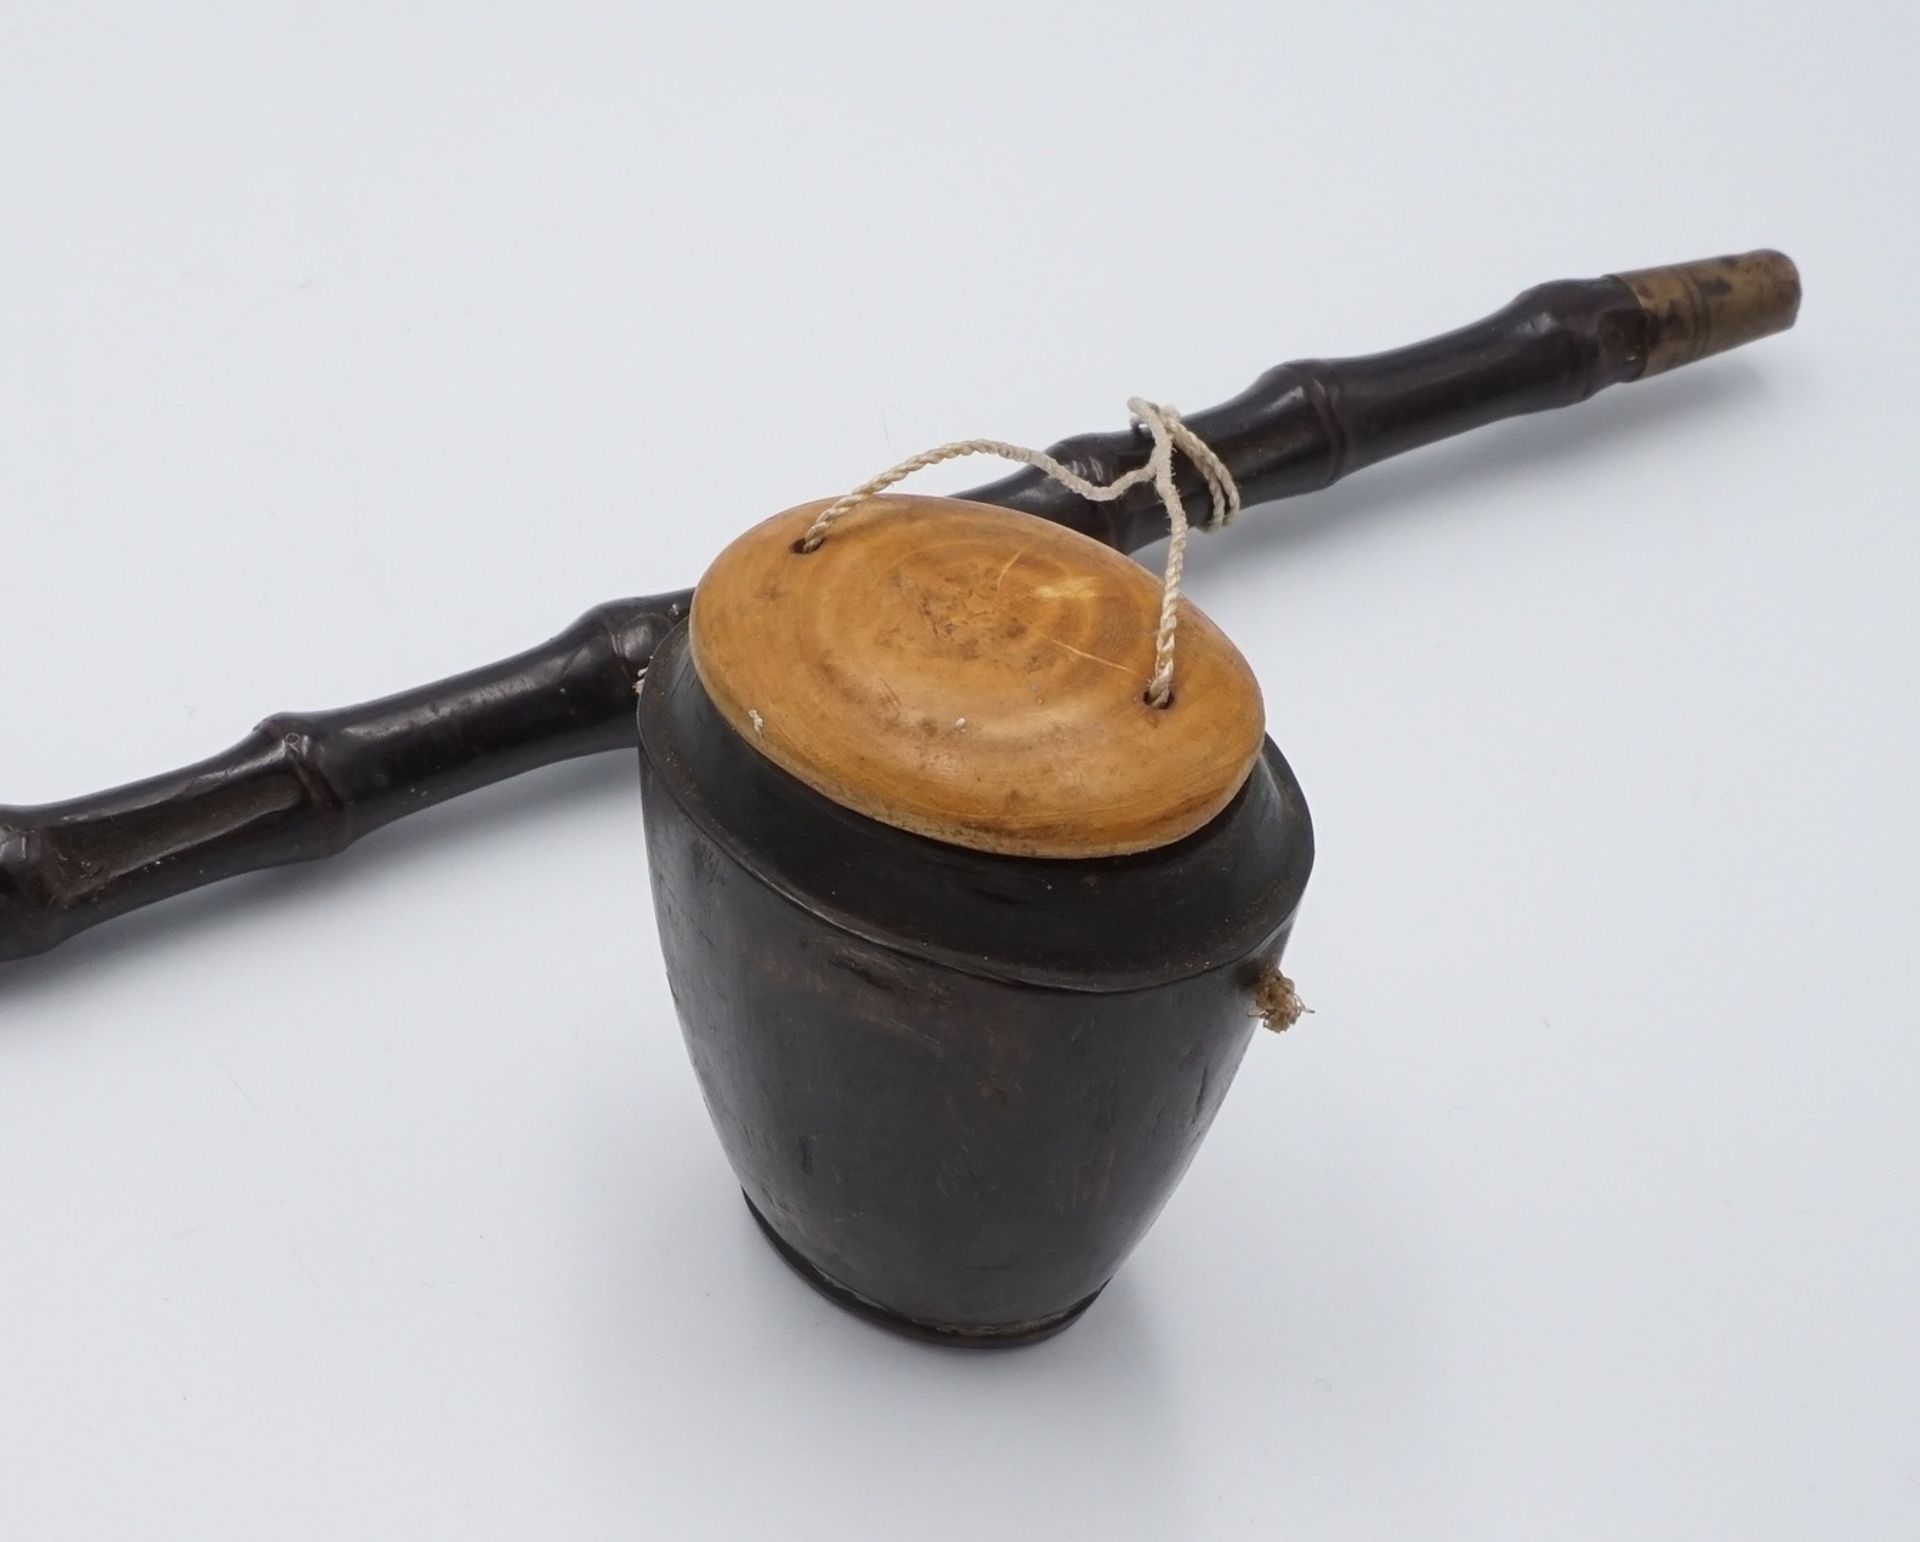 Opiumpfeife mit HornbehälterPfeife aus Bambus, Pfeifenkopf und Mundstück aus Messing, mit kleinem - Bild 3 aus 3